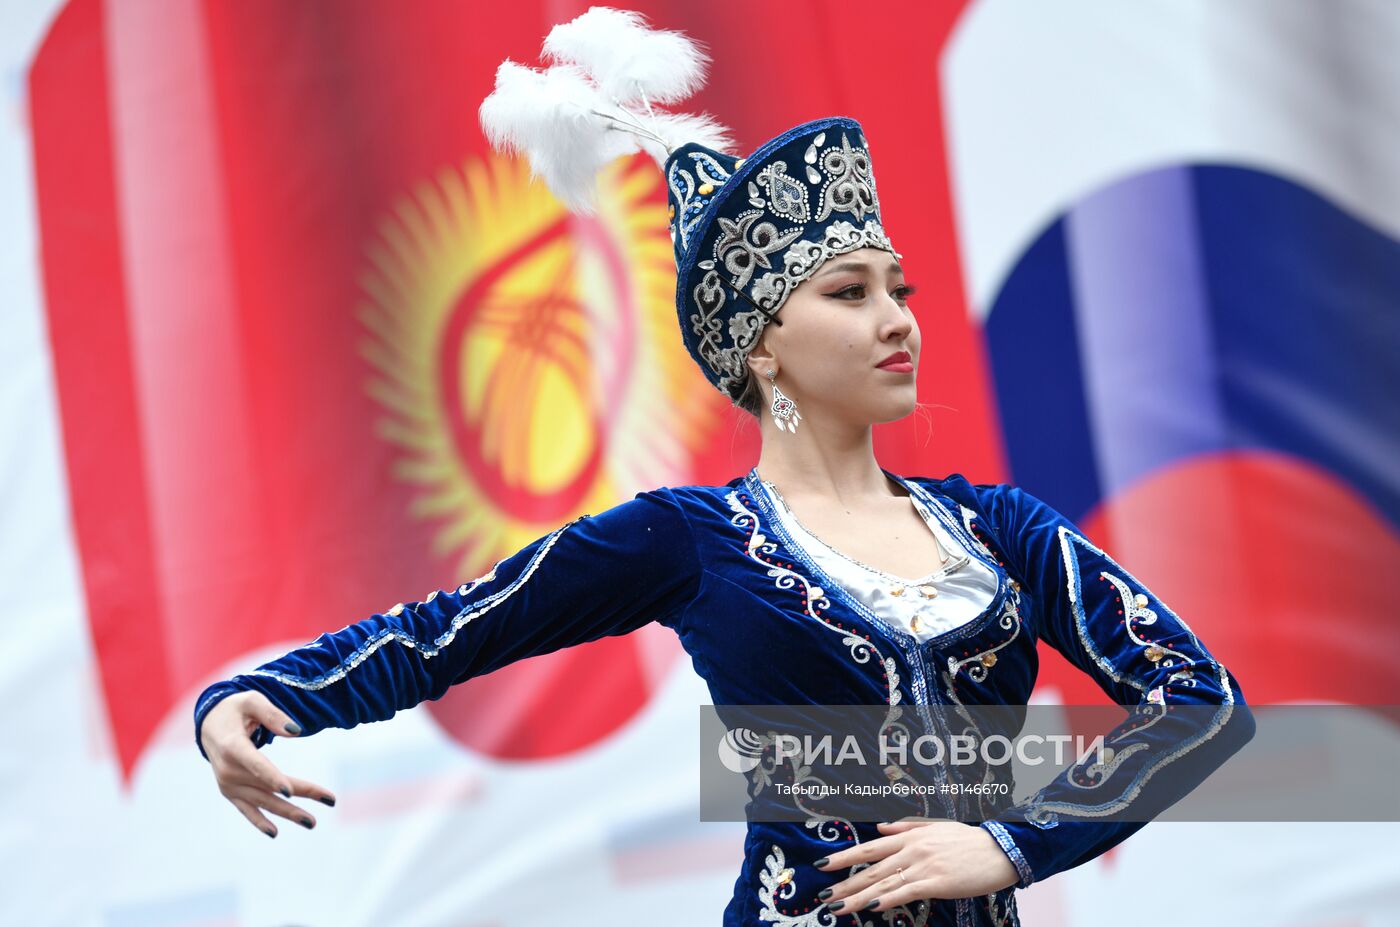 Митинг в поддержку России в Бишкеке